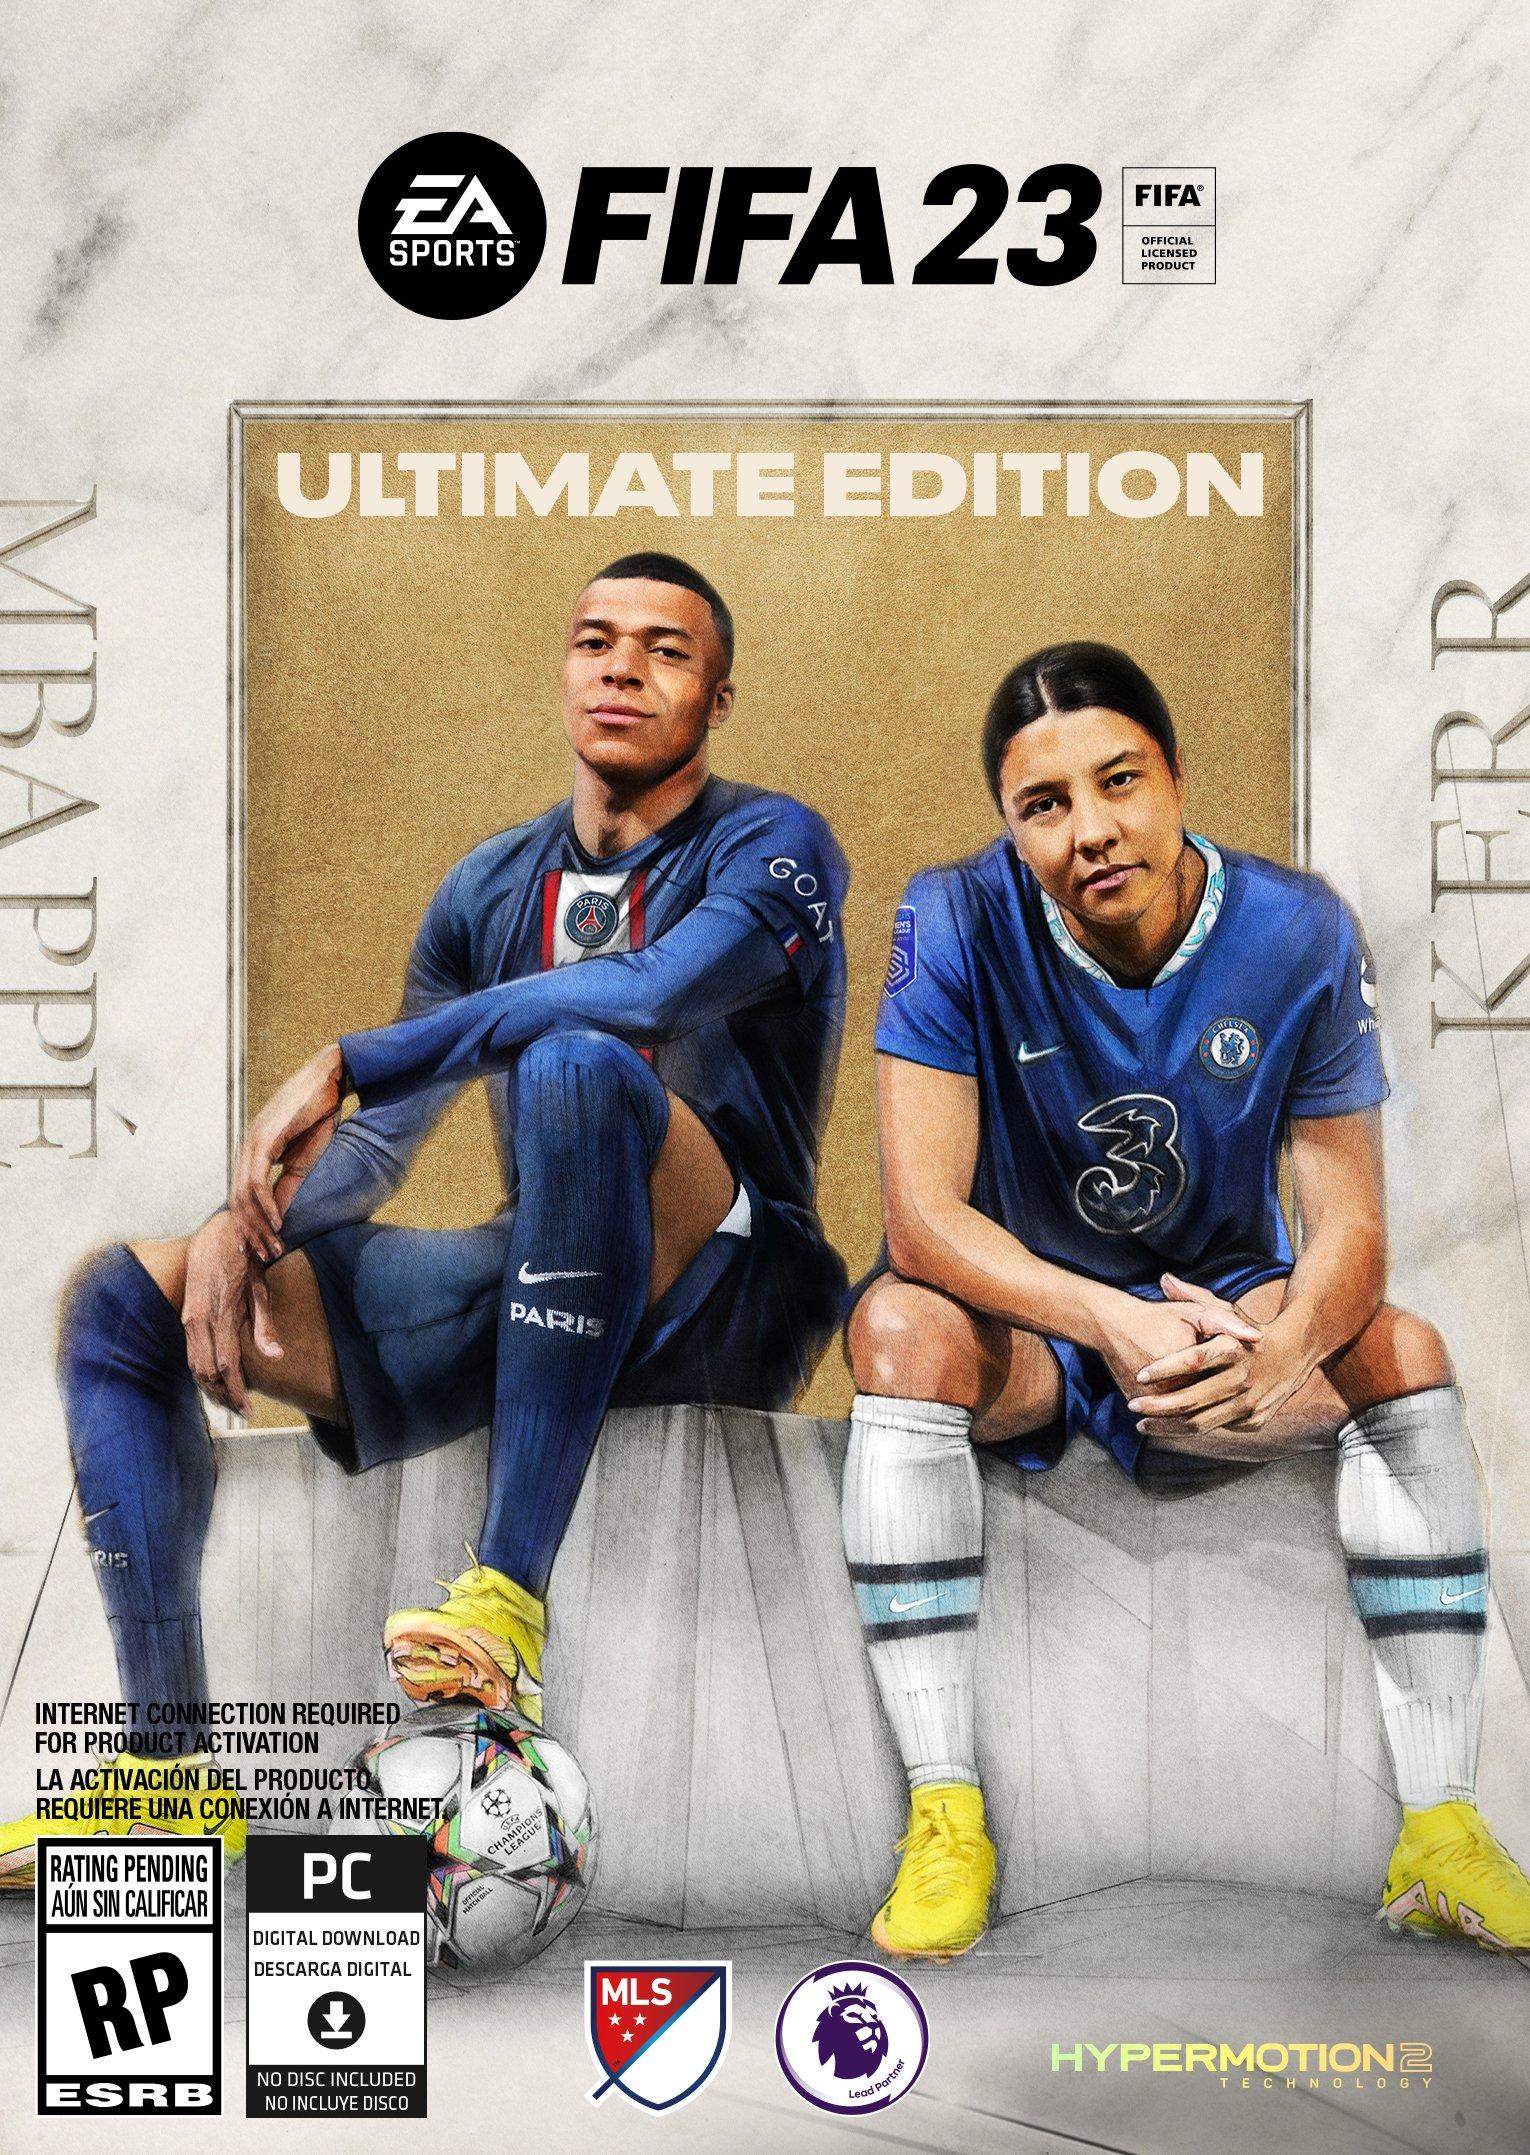 FIFA 23 Ultimate Edition - PC Origin là một siêu phẩm của thể loại bóng đá. Trò chơi này sẽ mang đến cho bạn những trận đấu đầy kịch tính, các cầu thủ nổi tiếng và cảm giác như đang trở thành một huấn luyện viên thực thụ. Hãy xem hình ảnh để thấy rõ hơn những gì bạn sẽ trải nghiệm.